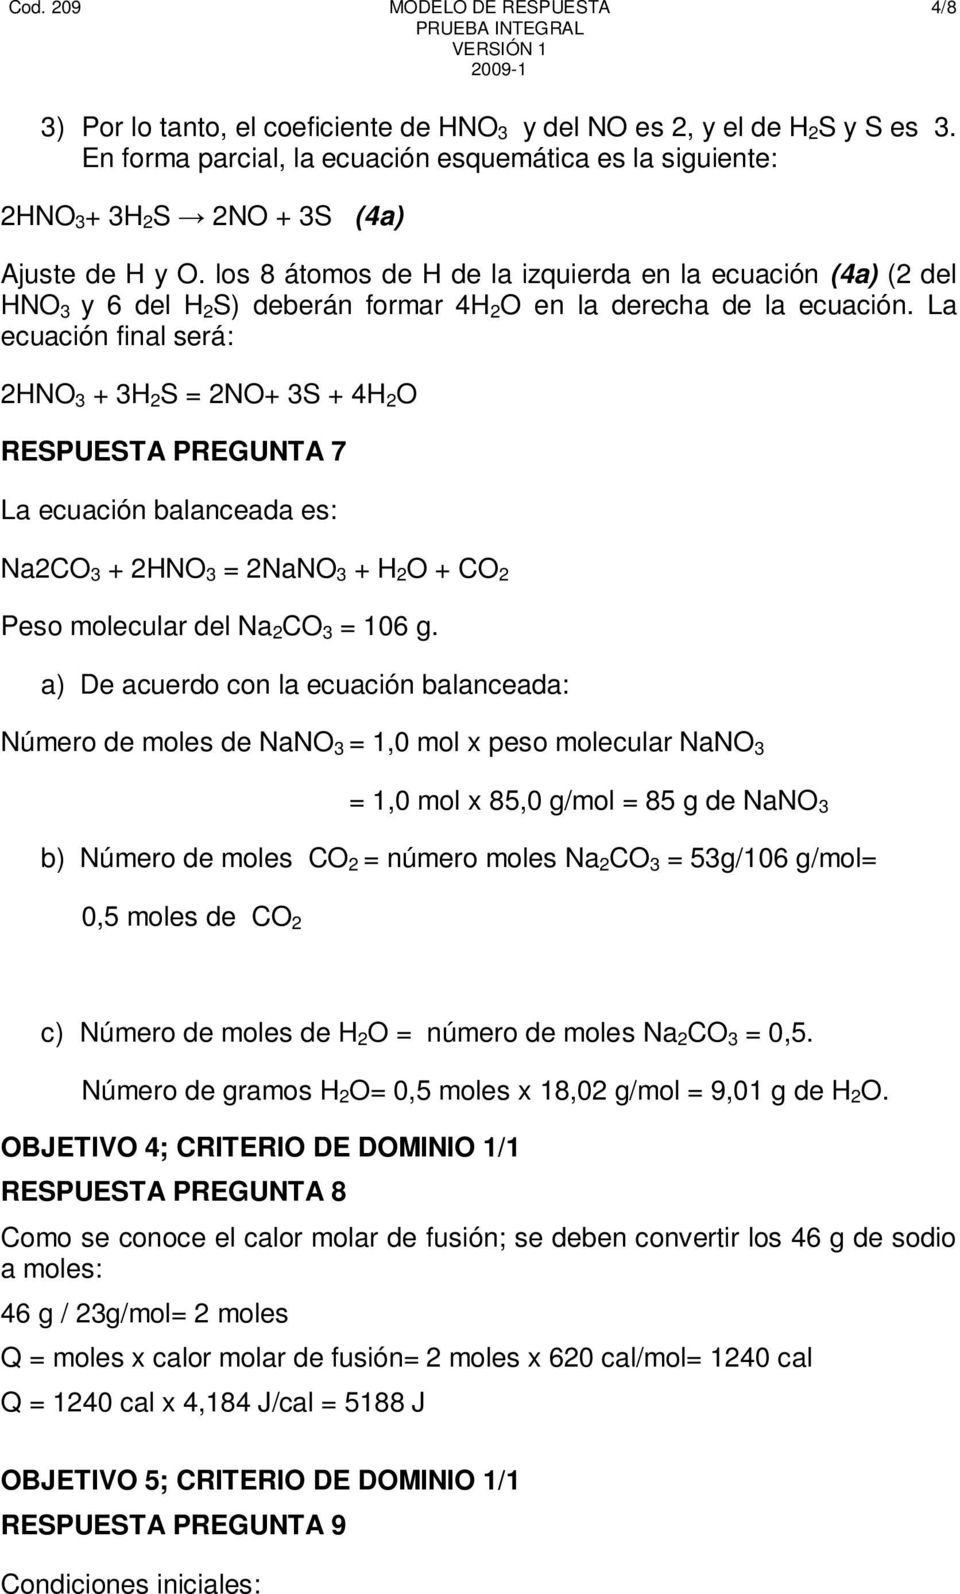 La ecuación final será: 2HNO 3 + 3H 2 S = 2NO+ 3S + 4H 2 O RESPUESTA PREGUNTA 7 La ecuación balanceada es: Na2CO 3 + 2HNO 3 = 2NaNO 3 + H 2 O + CO 2 Peso molecular del Na 2 CO 3 = 106 g.